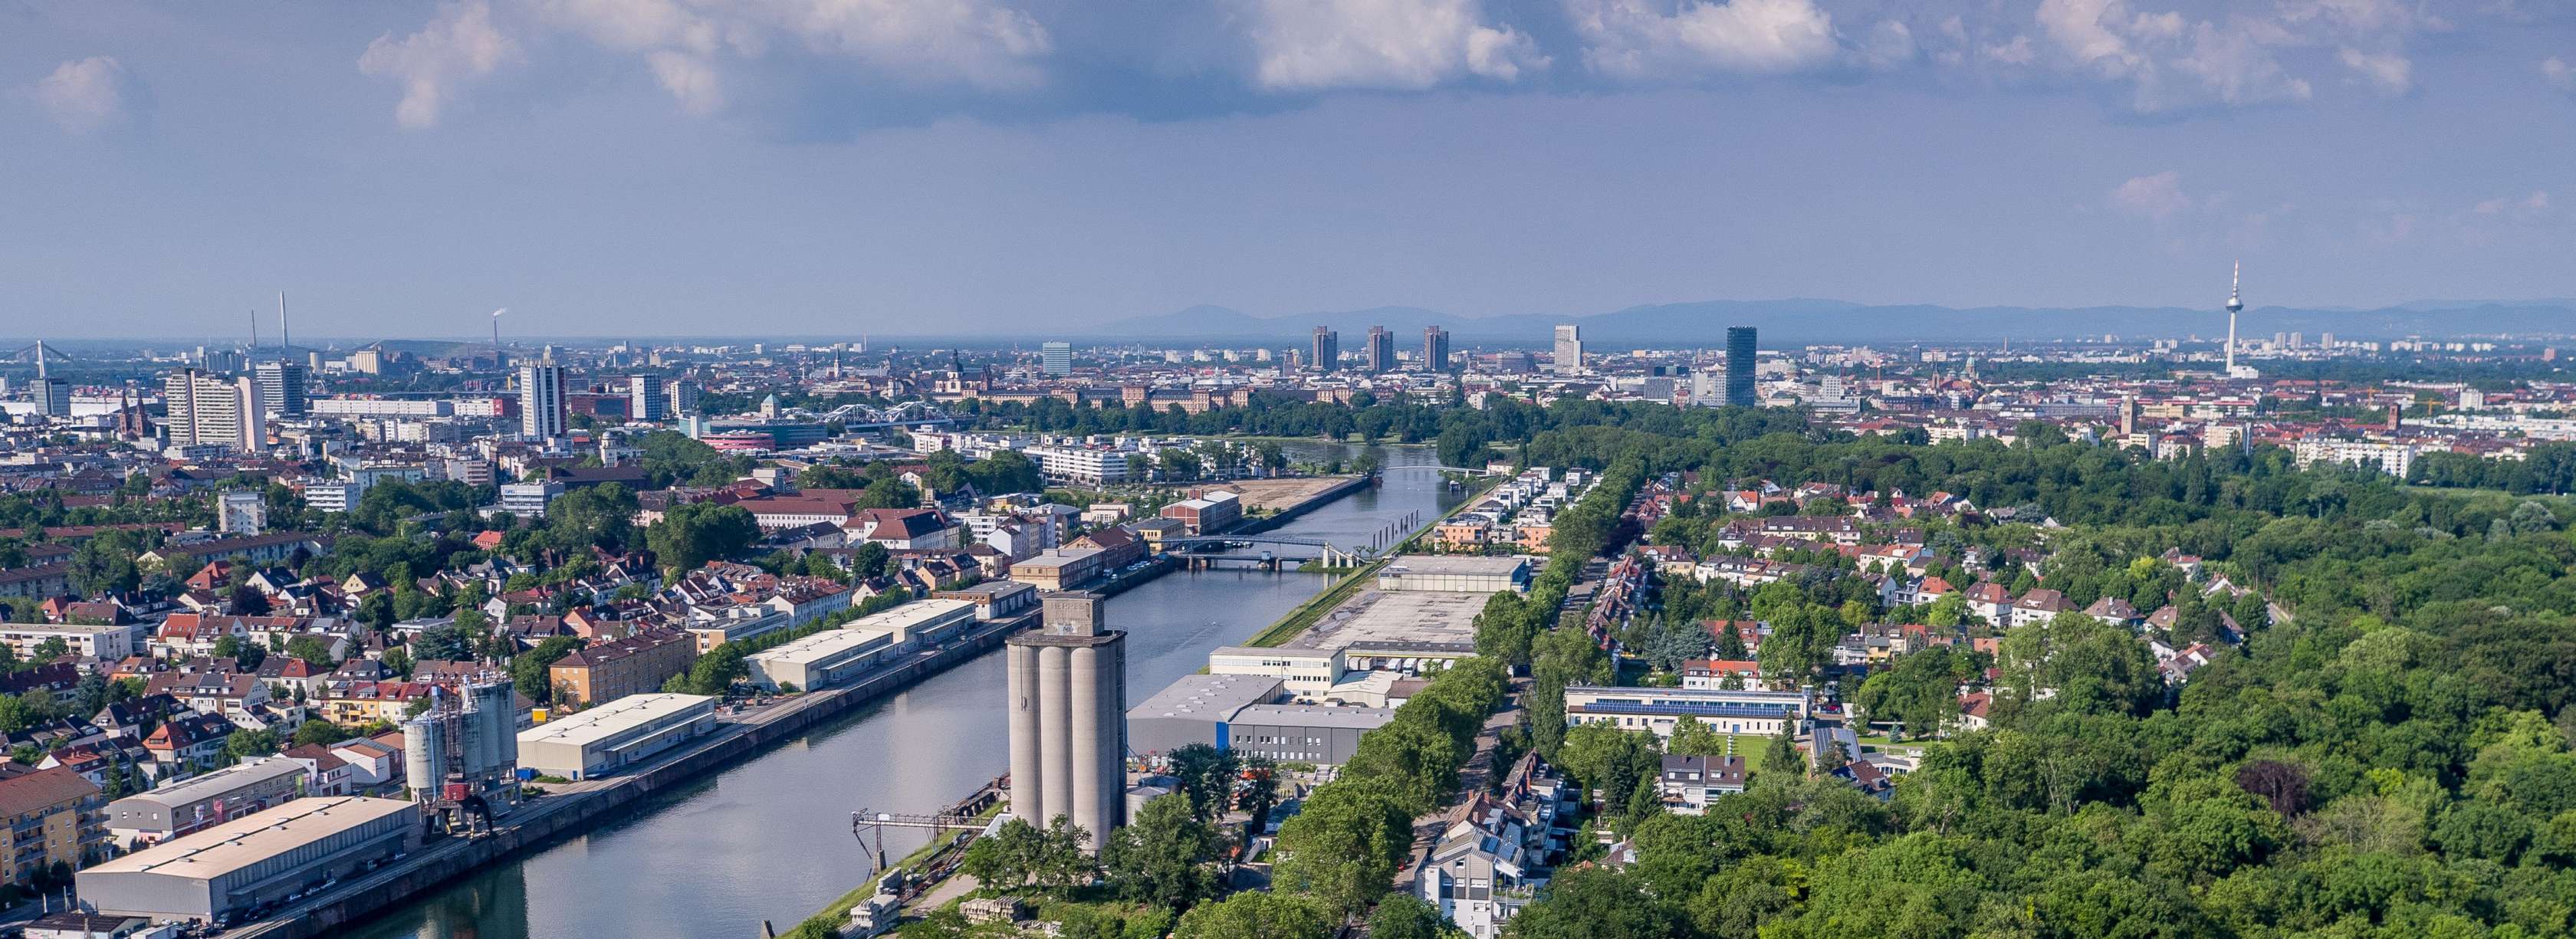 Versicherung in Ludwigshafen am Rhein: Finden Sie über die Agentursuche der Allianz den passenden Ansprechpartner